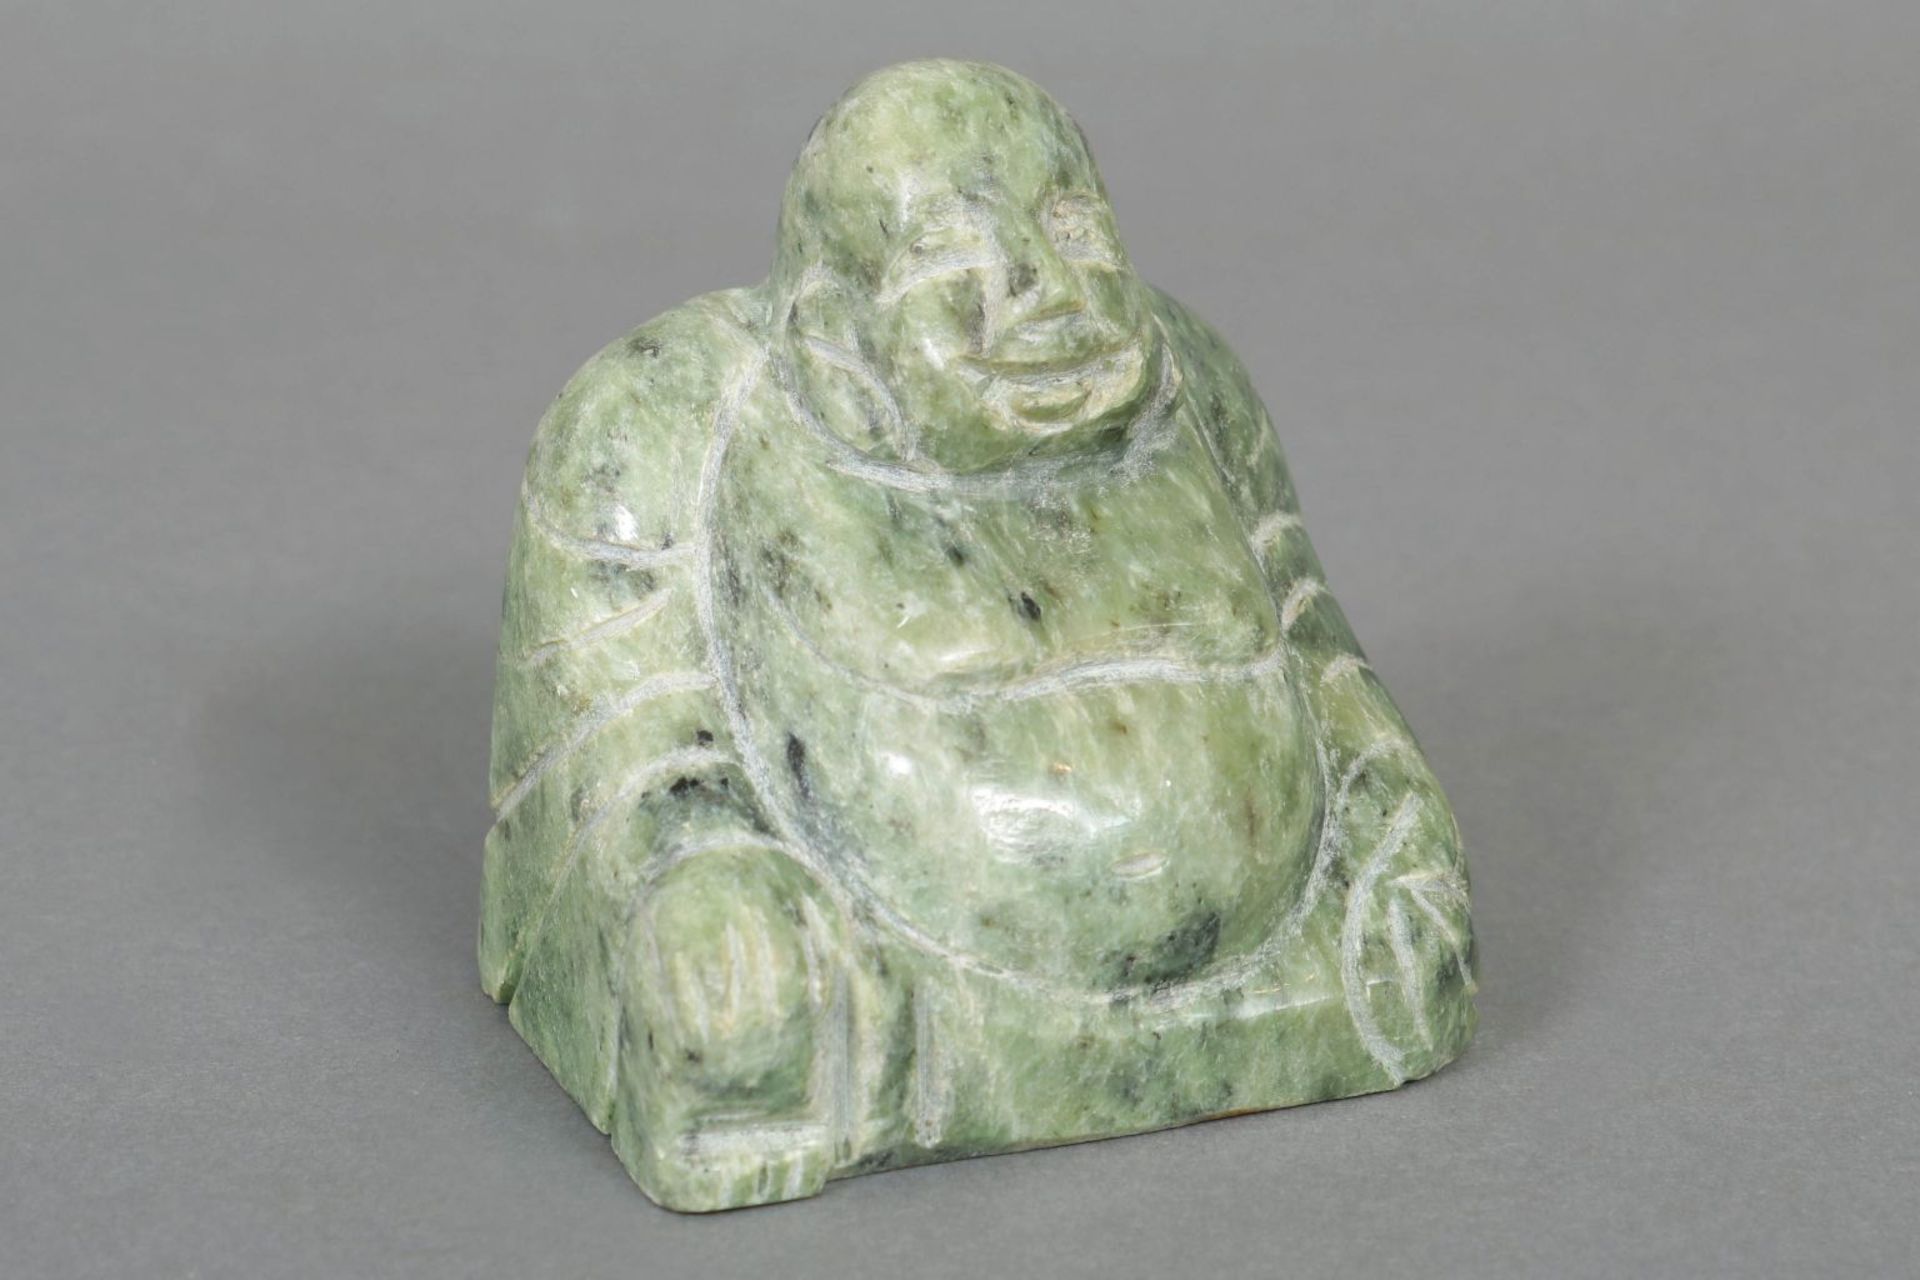 Jade-Figur ¨Buddha¨ (sitzend und lachend)